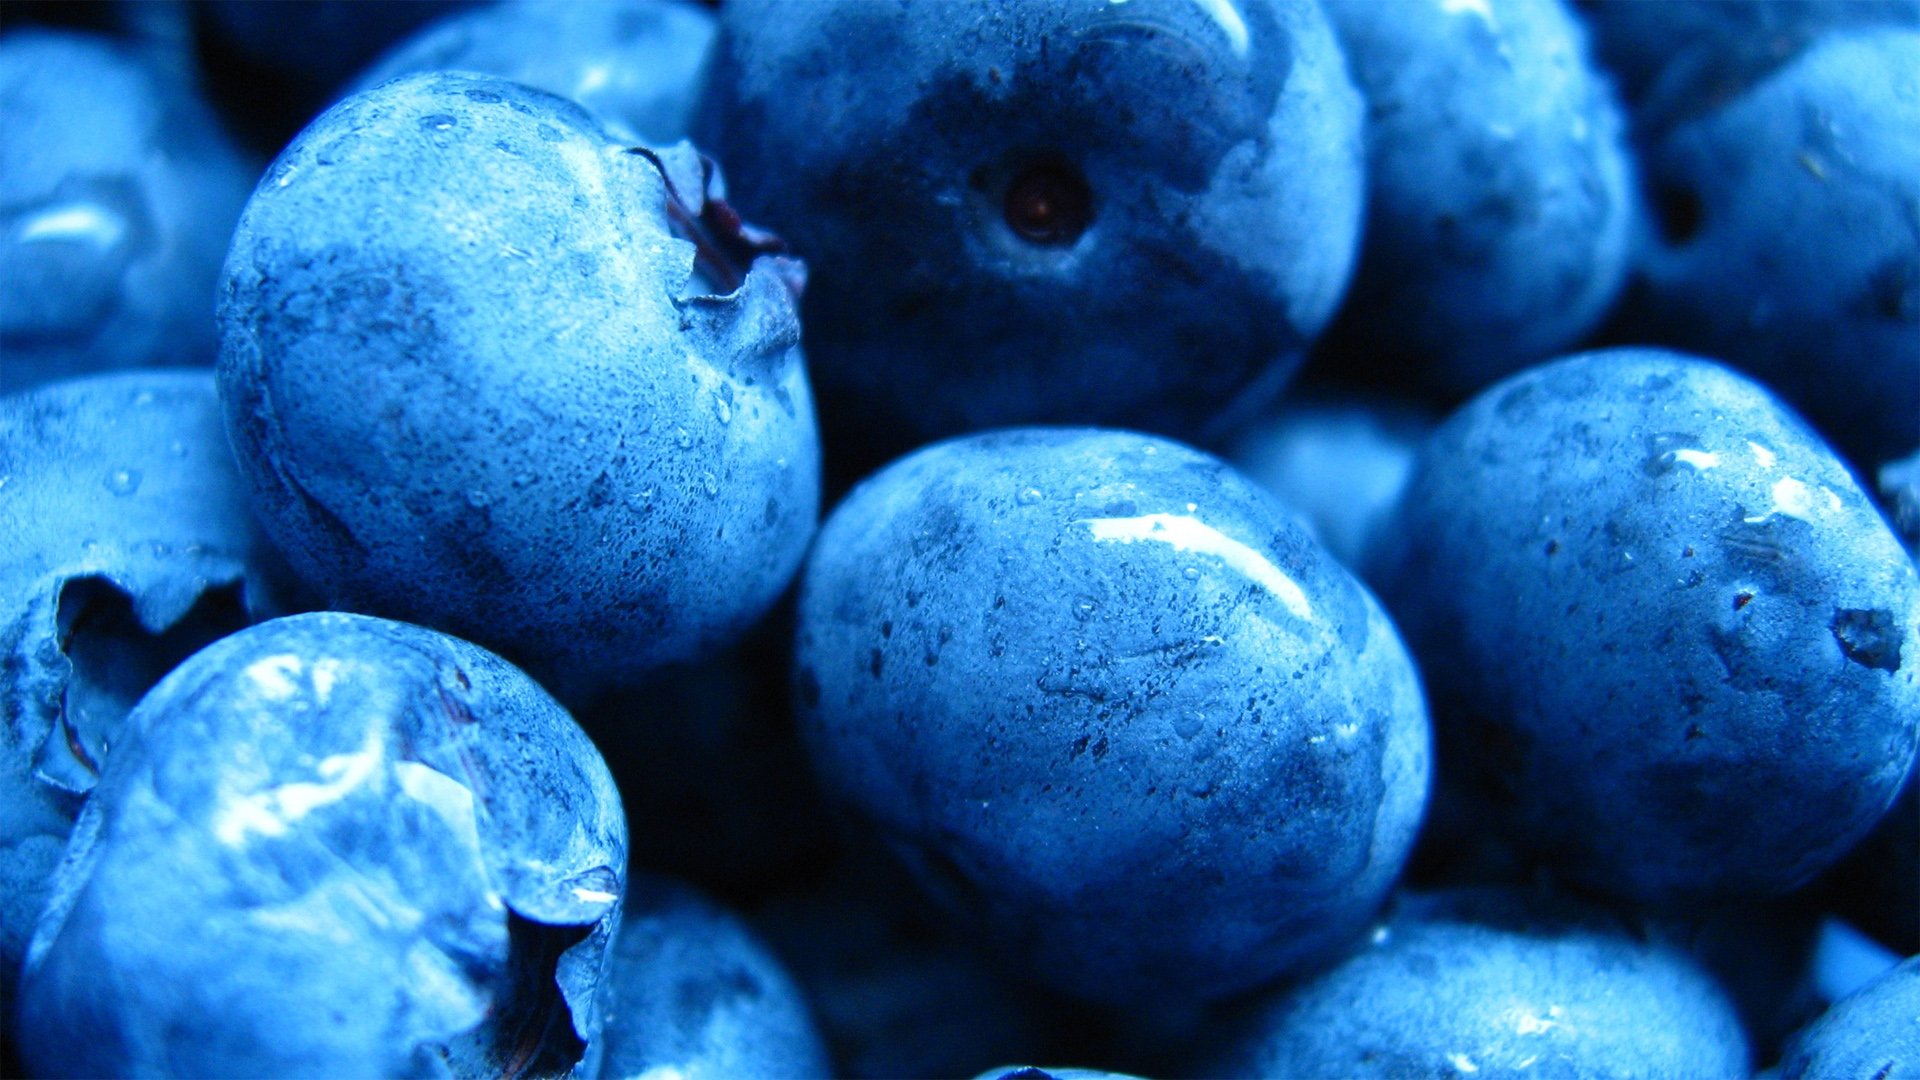 小清新动感水果蓝莓 相关壁纸